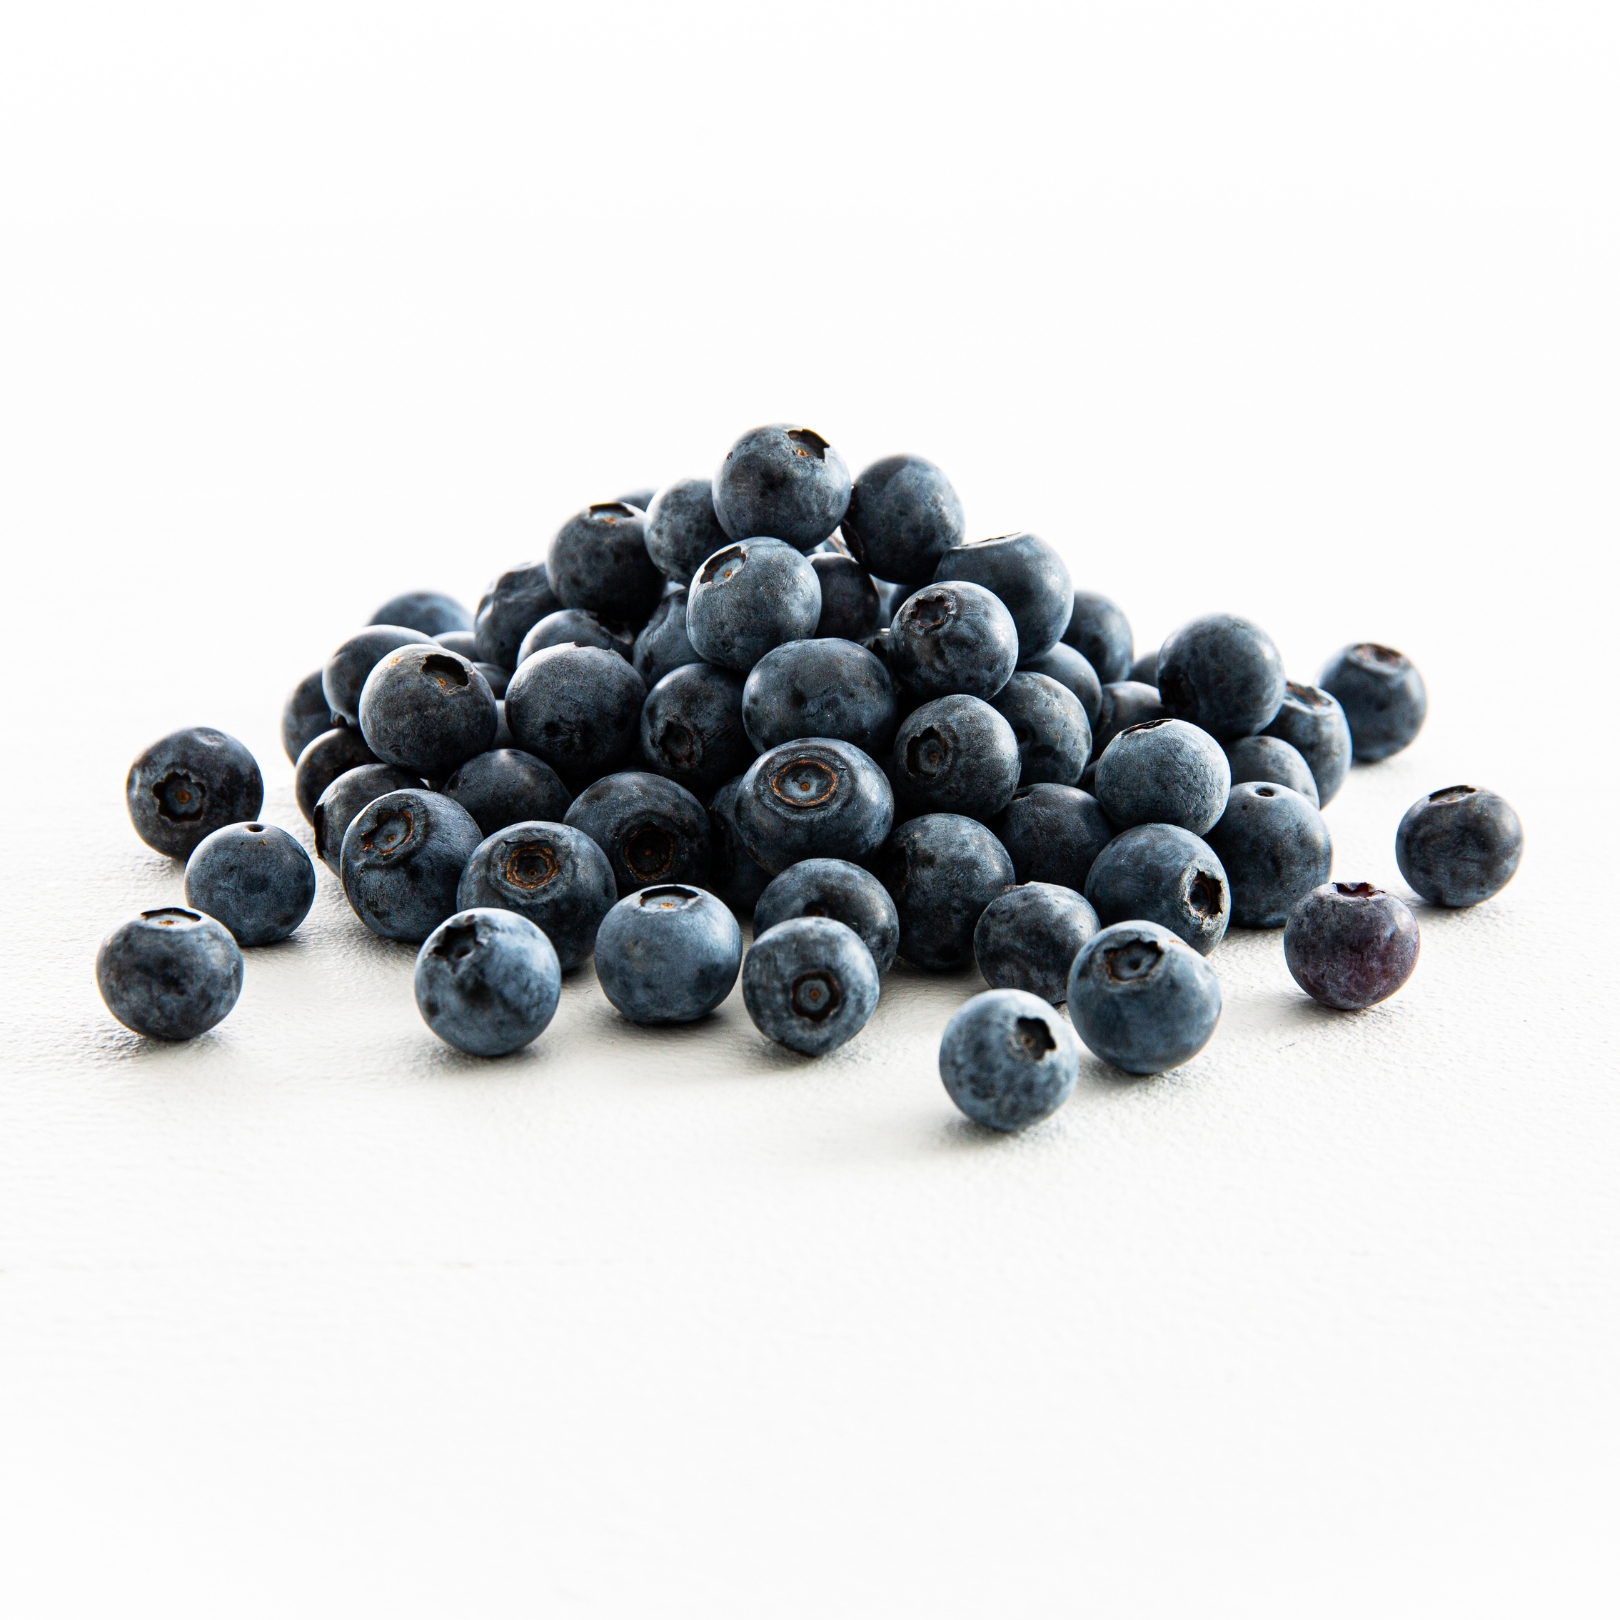 Buy Blueberries Online NZ